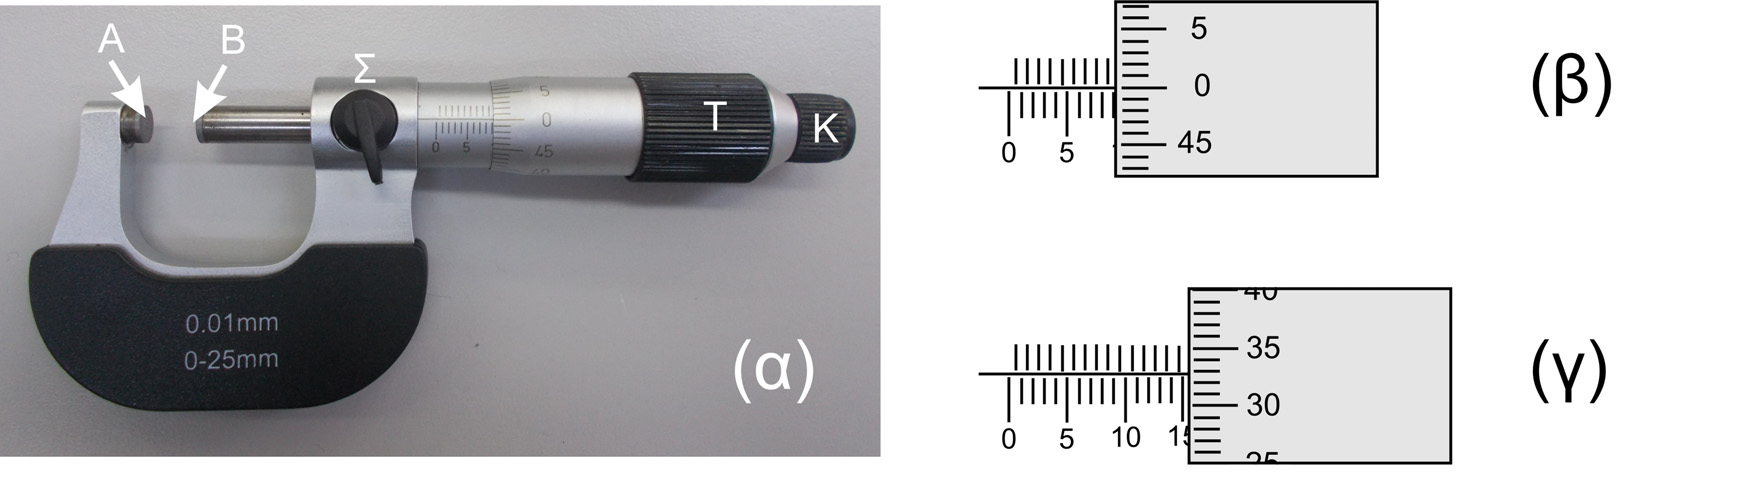 7.1.2. Μικρόμετρο Το μικρόμετρο χρησιμοποιείται για μετρήσεις διαστάσεων αντικειμένων όπου απαιτείται ακόμη μεγαλύτερη ακρίβεια (μέχρι 1/100 mm).